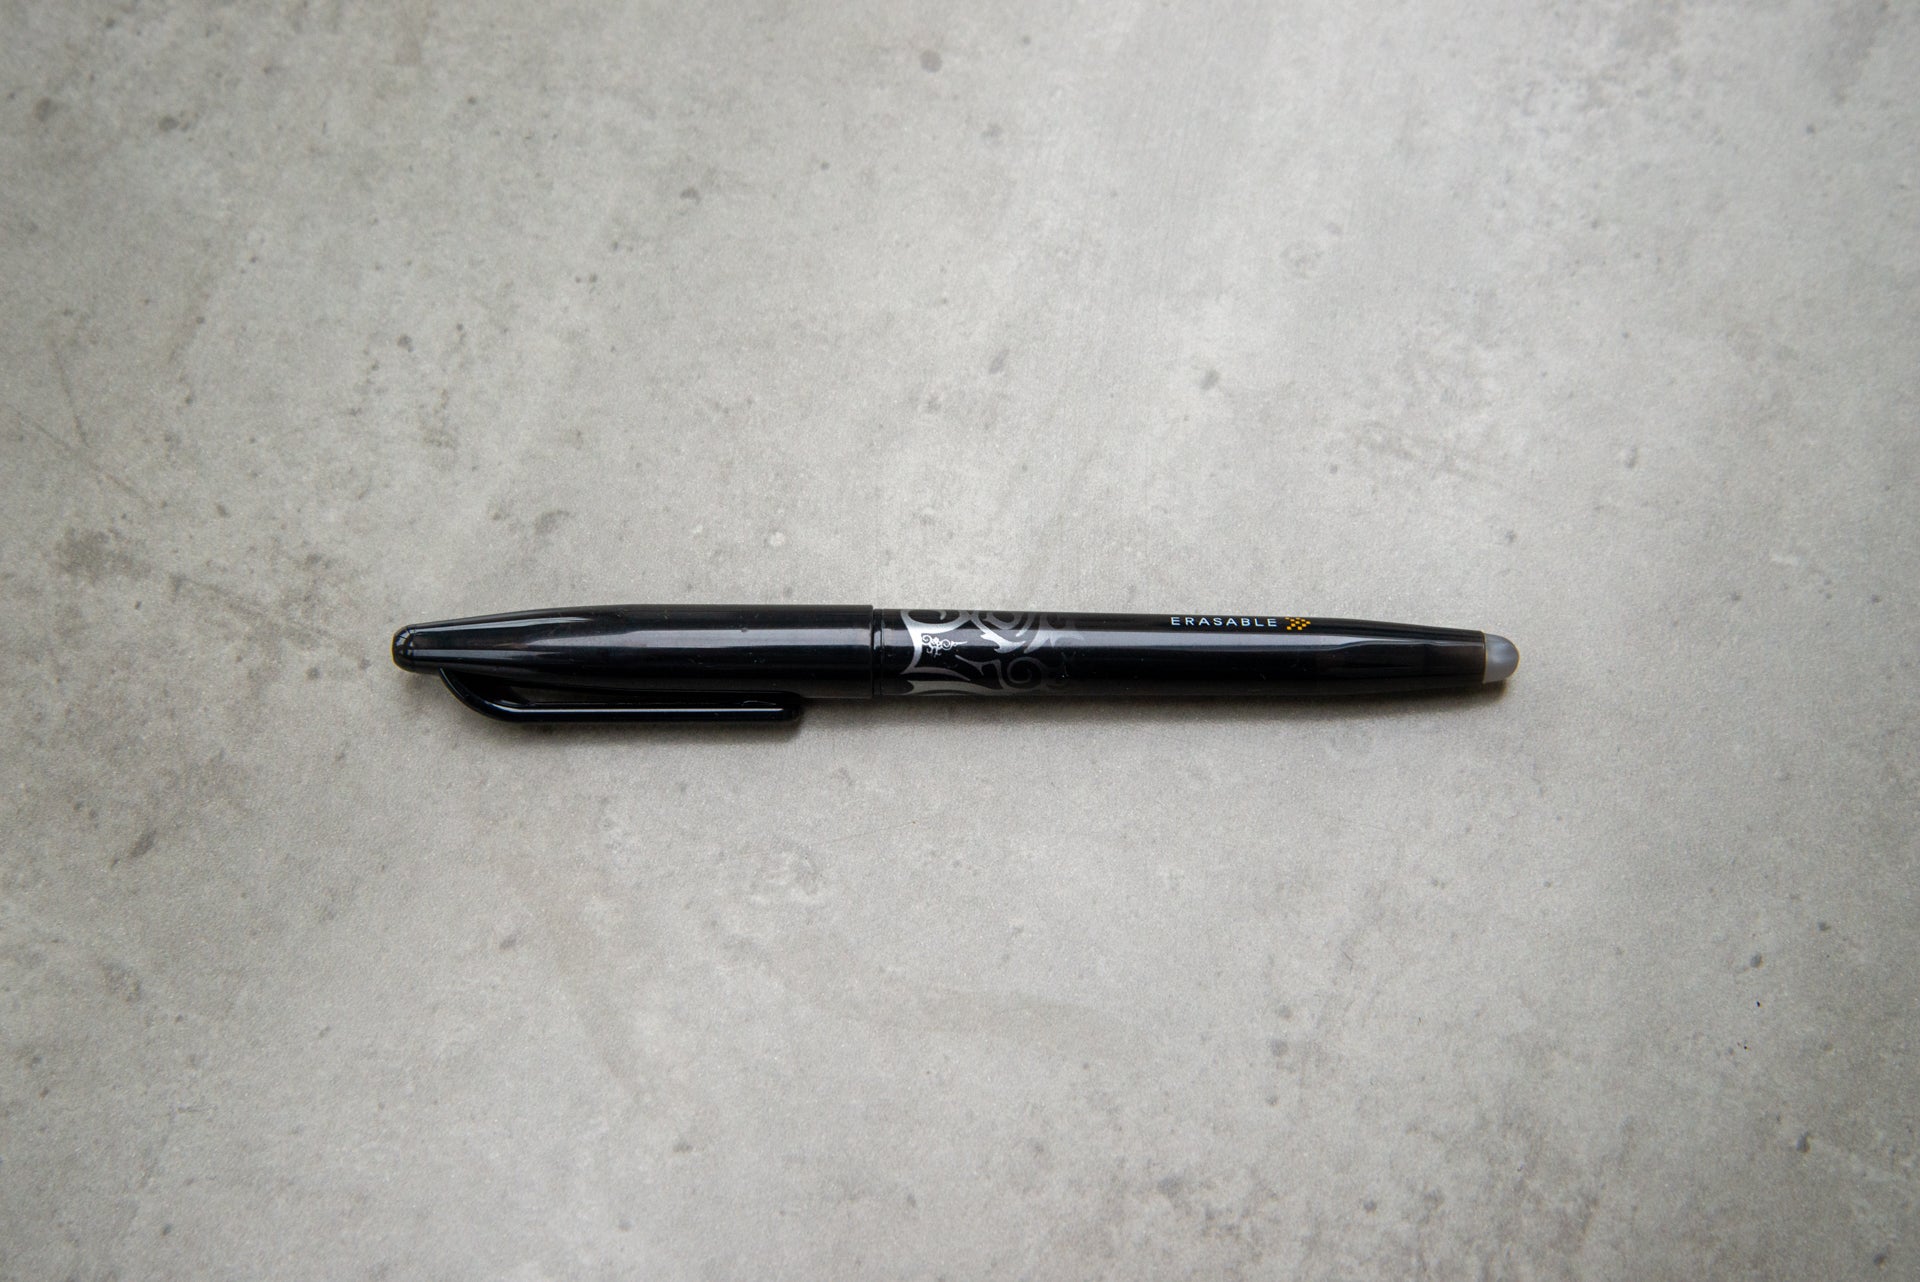 Rocketbook Fusion pen